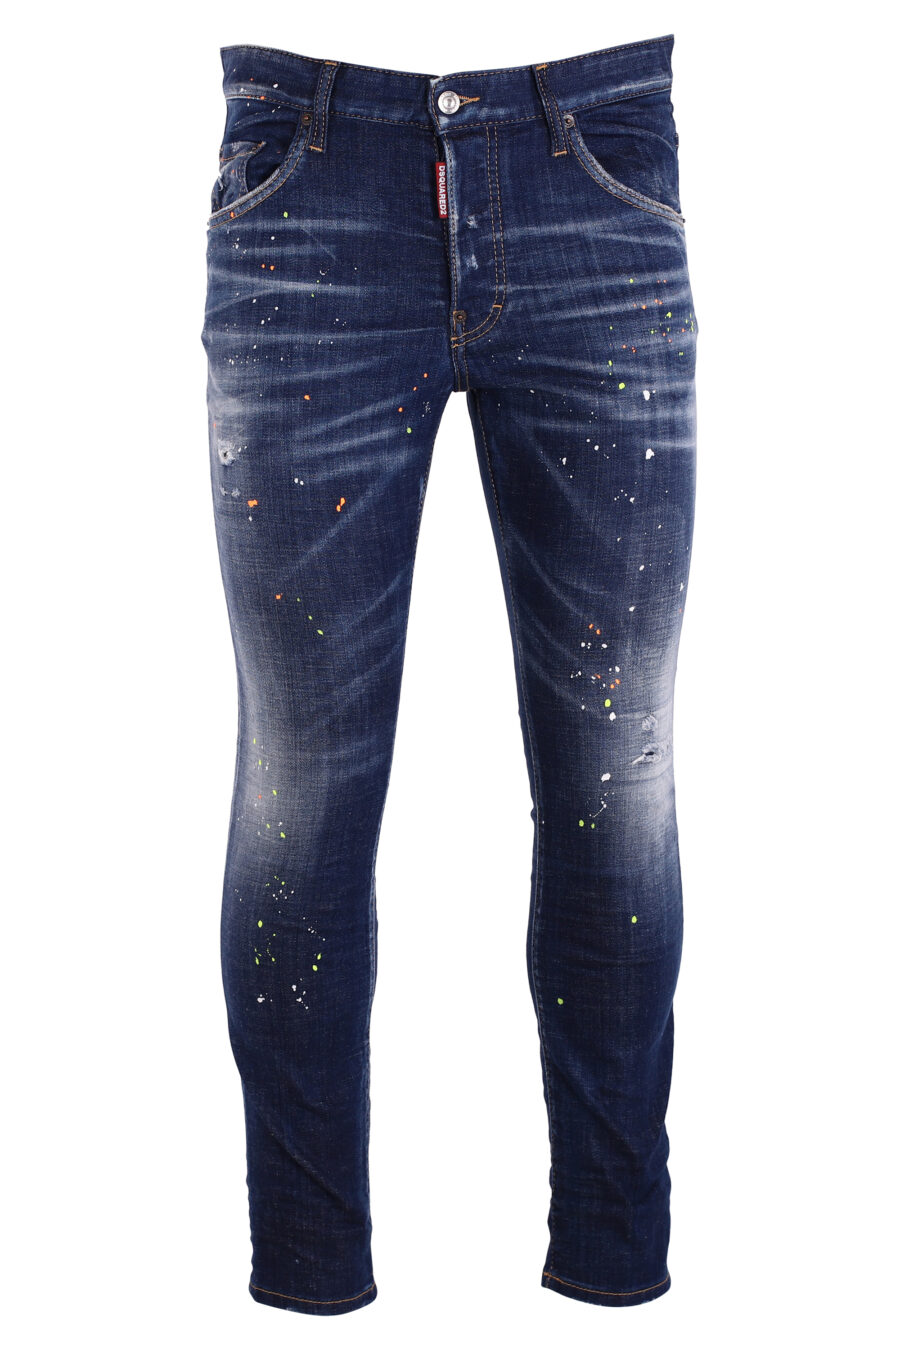 Calças de ganga "skater jean" azuis com salpicos de tinta branca - IMG 8993